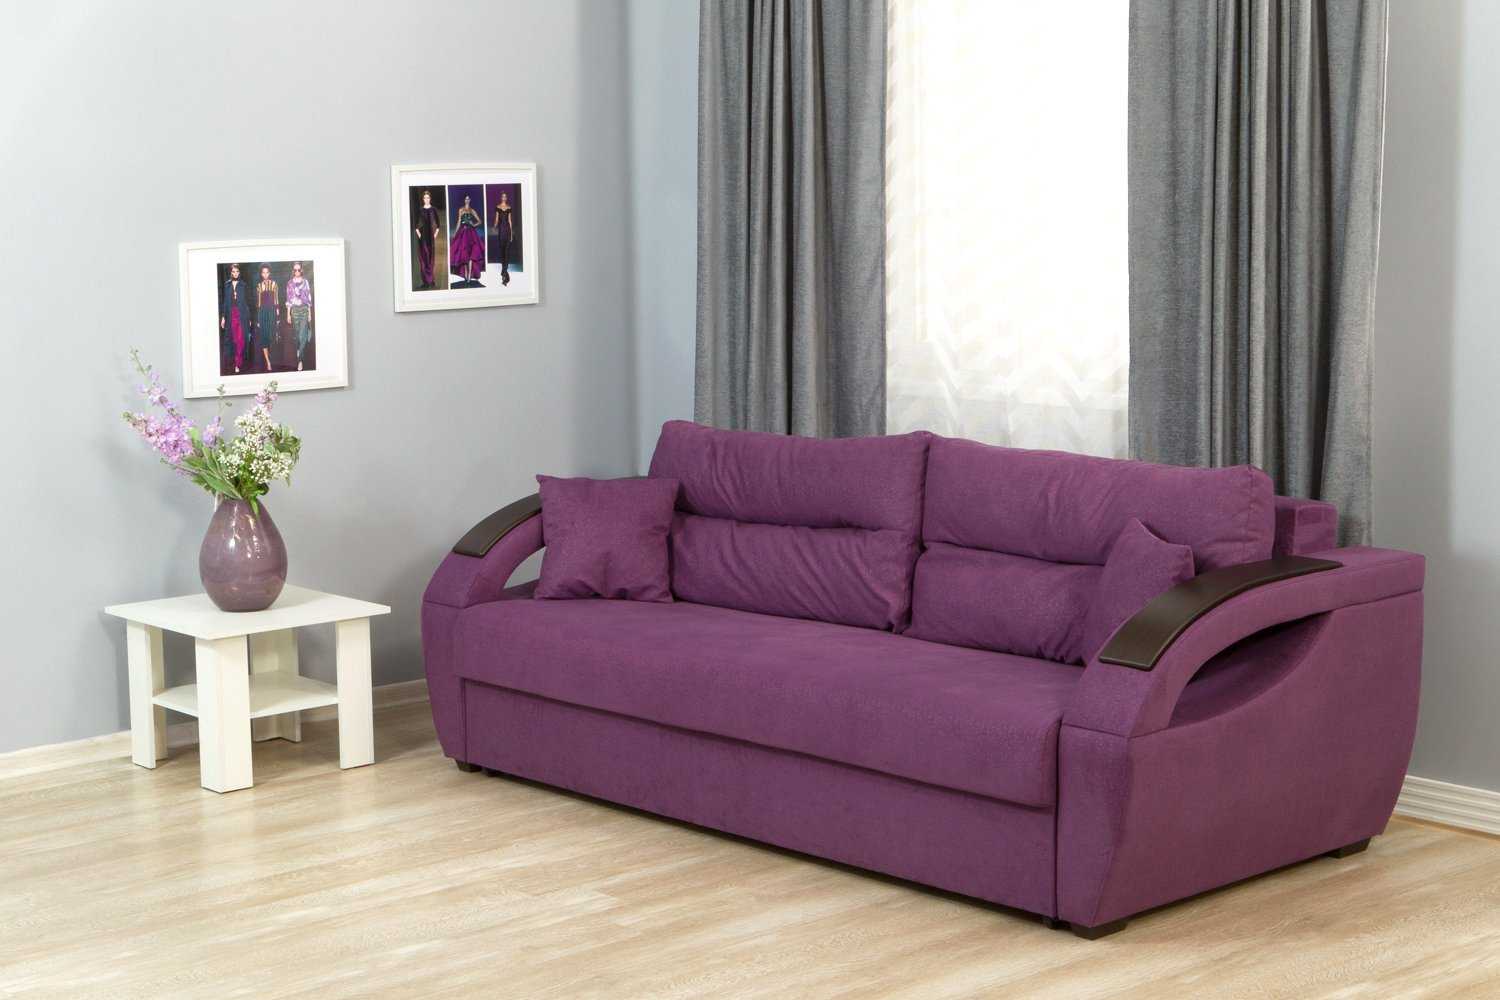 Серый диван в интерьере: виды, фото, дизайн, сочетание с обоями, шторами, декор